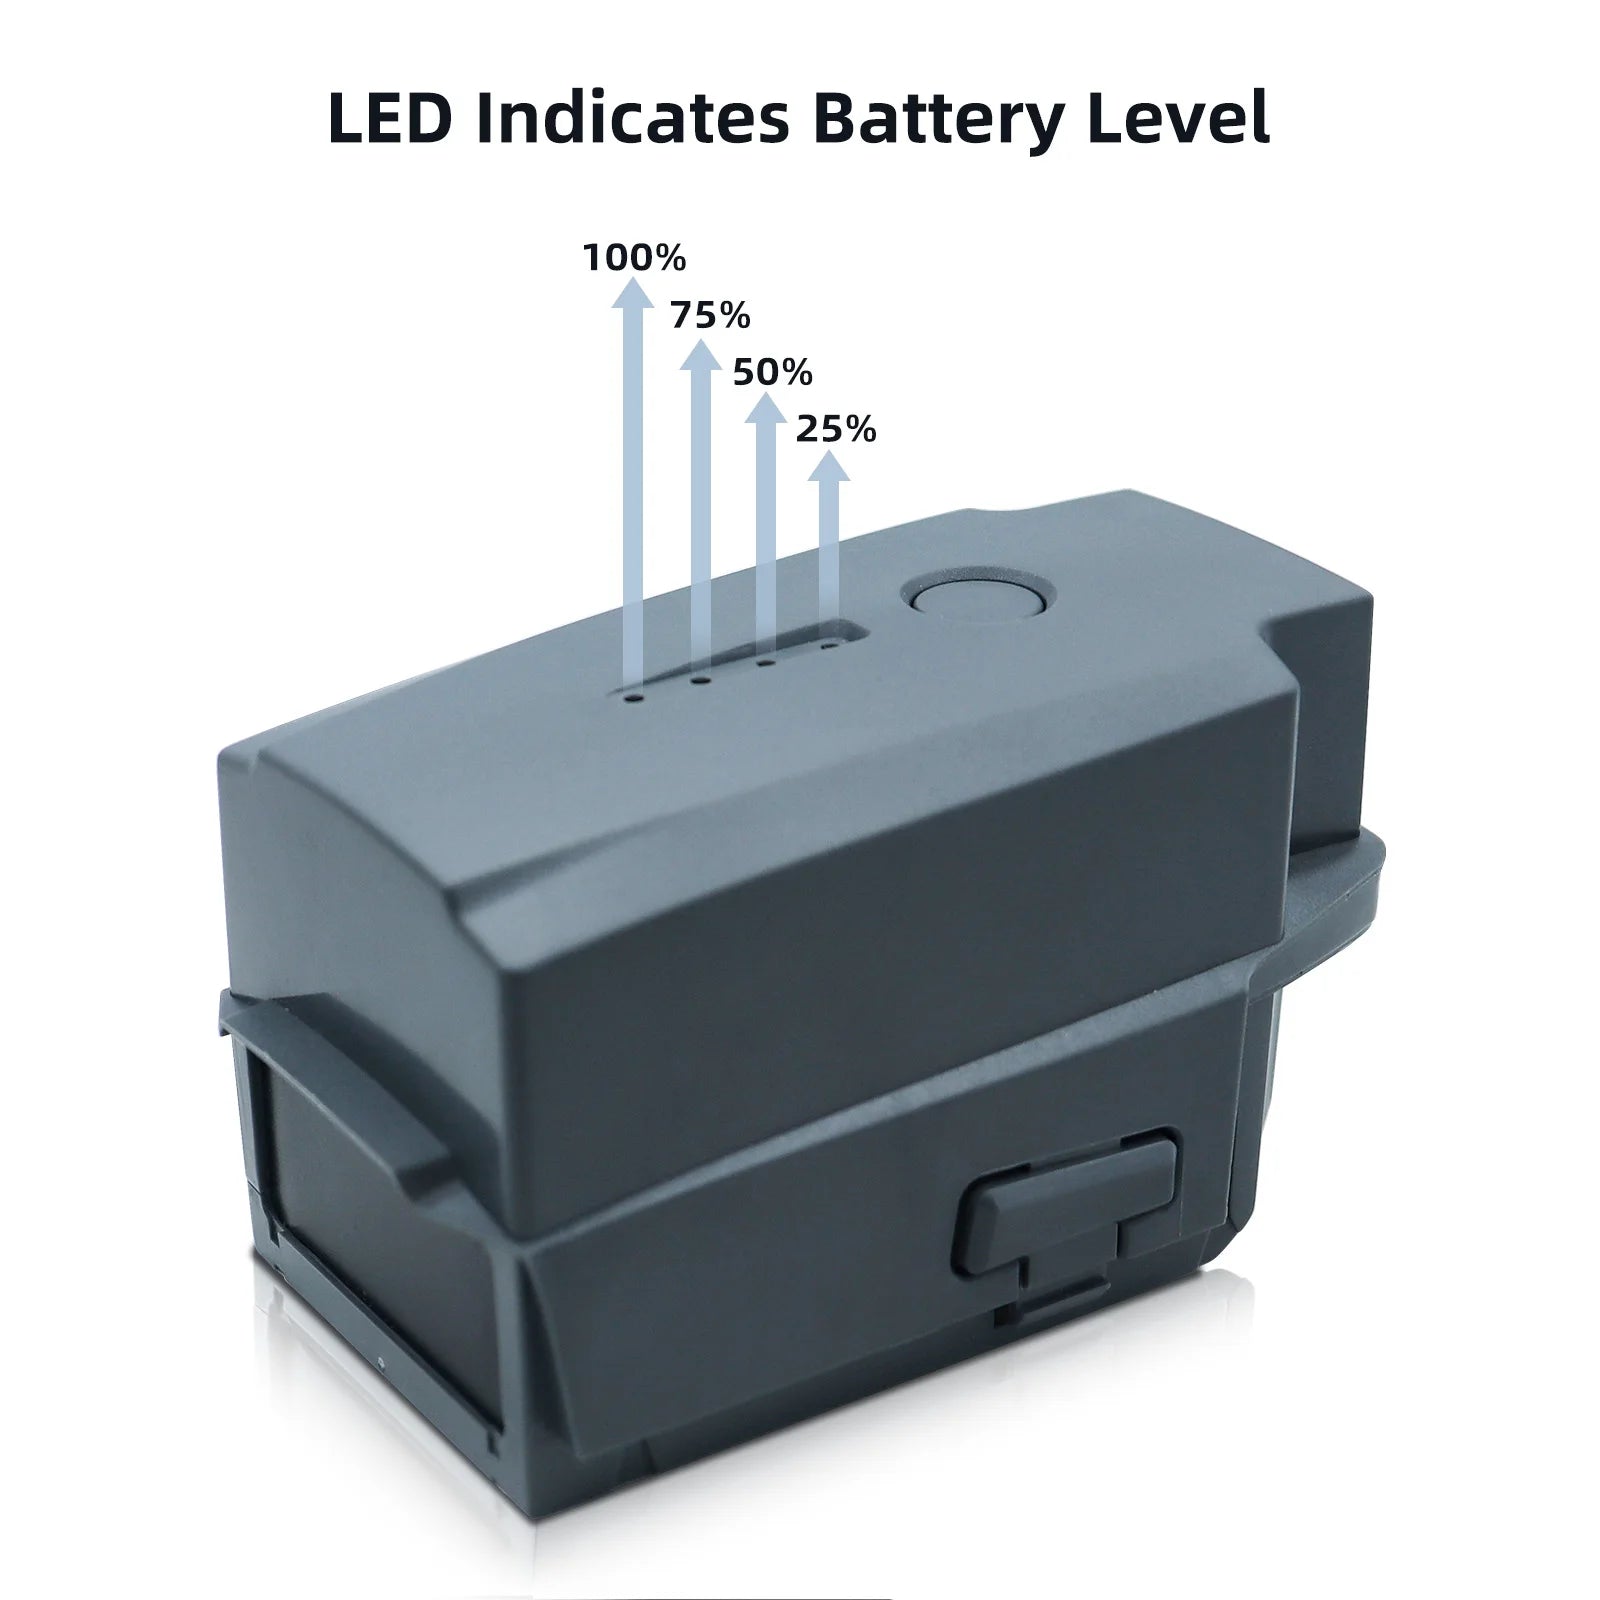 LED Indicates Battery Level 100% 75% 50%